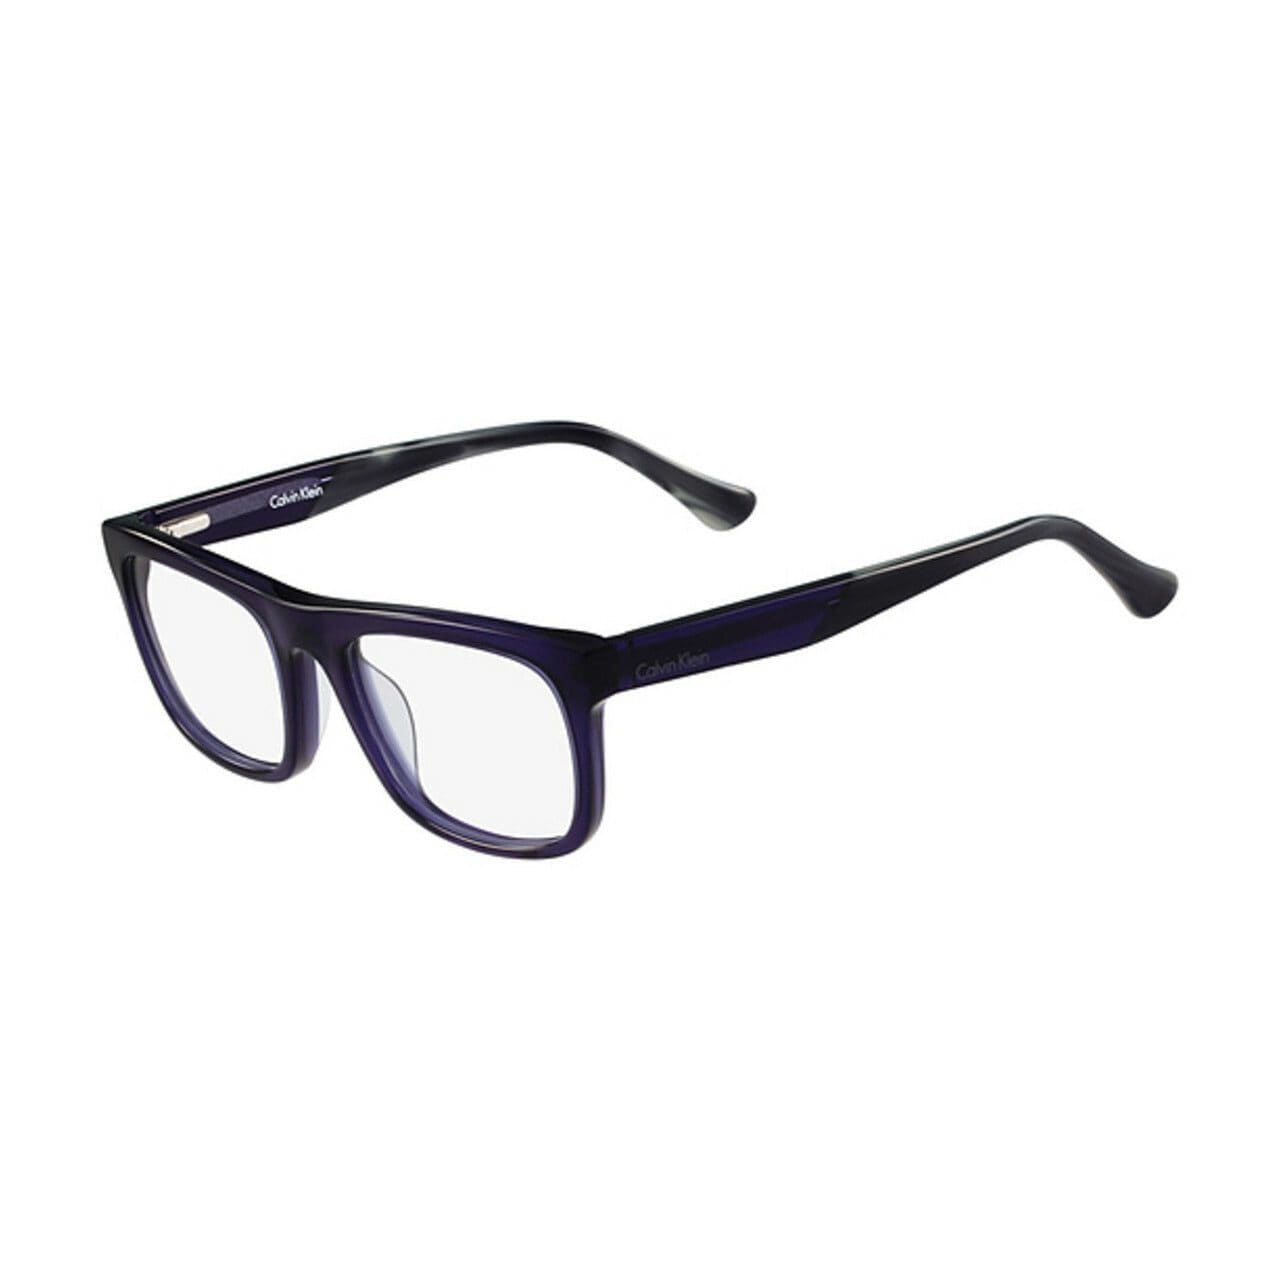 Calvin Klein CK-5925-414 Navy Square Men's Plastic Eyeglasses 750779094907